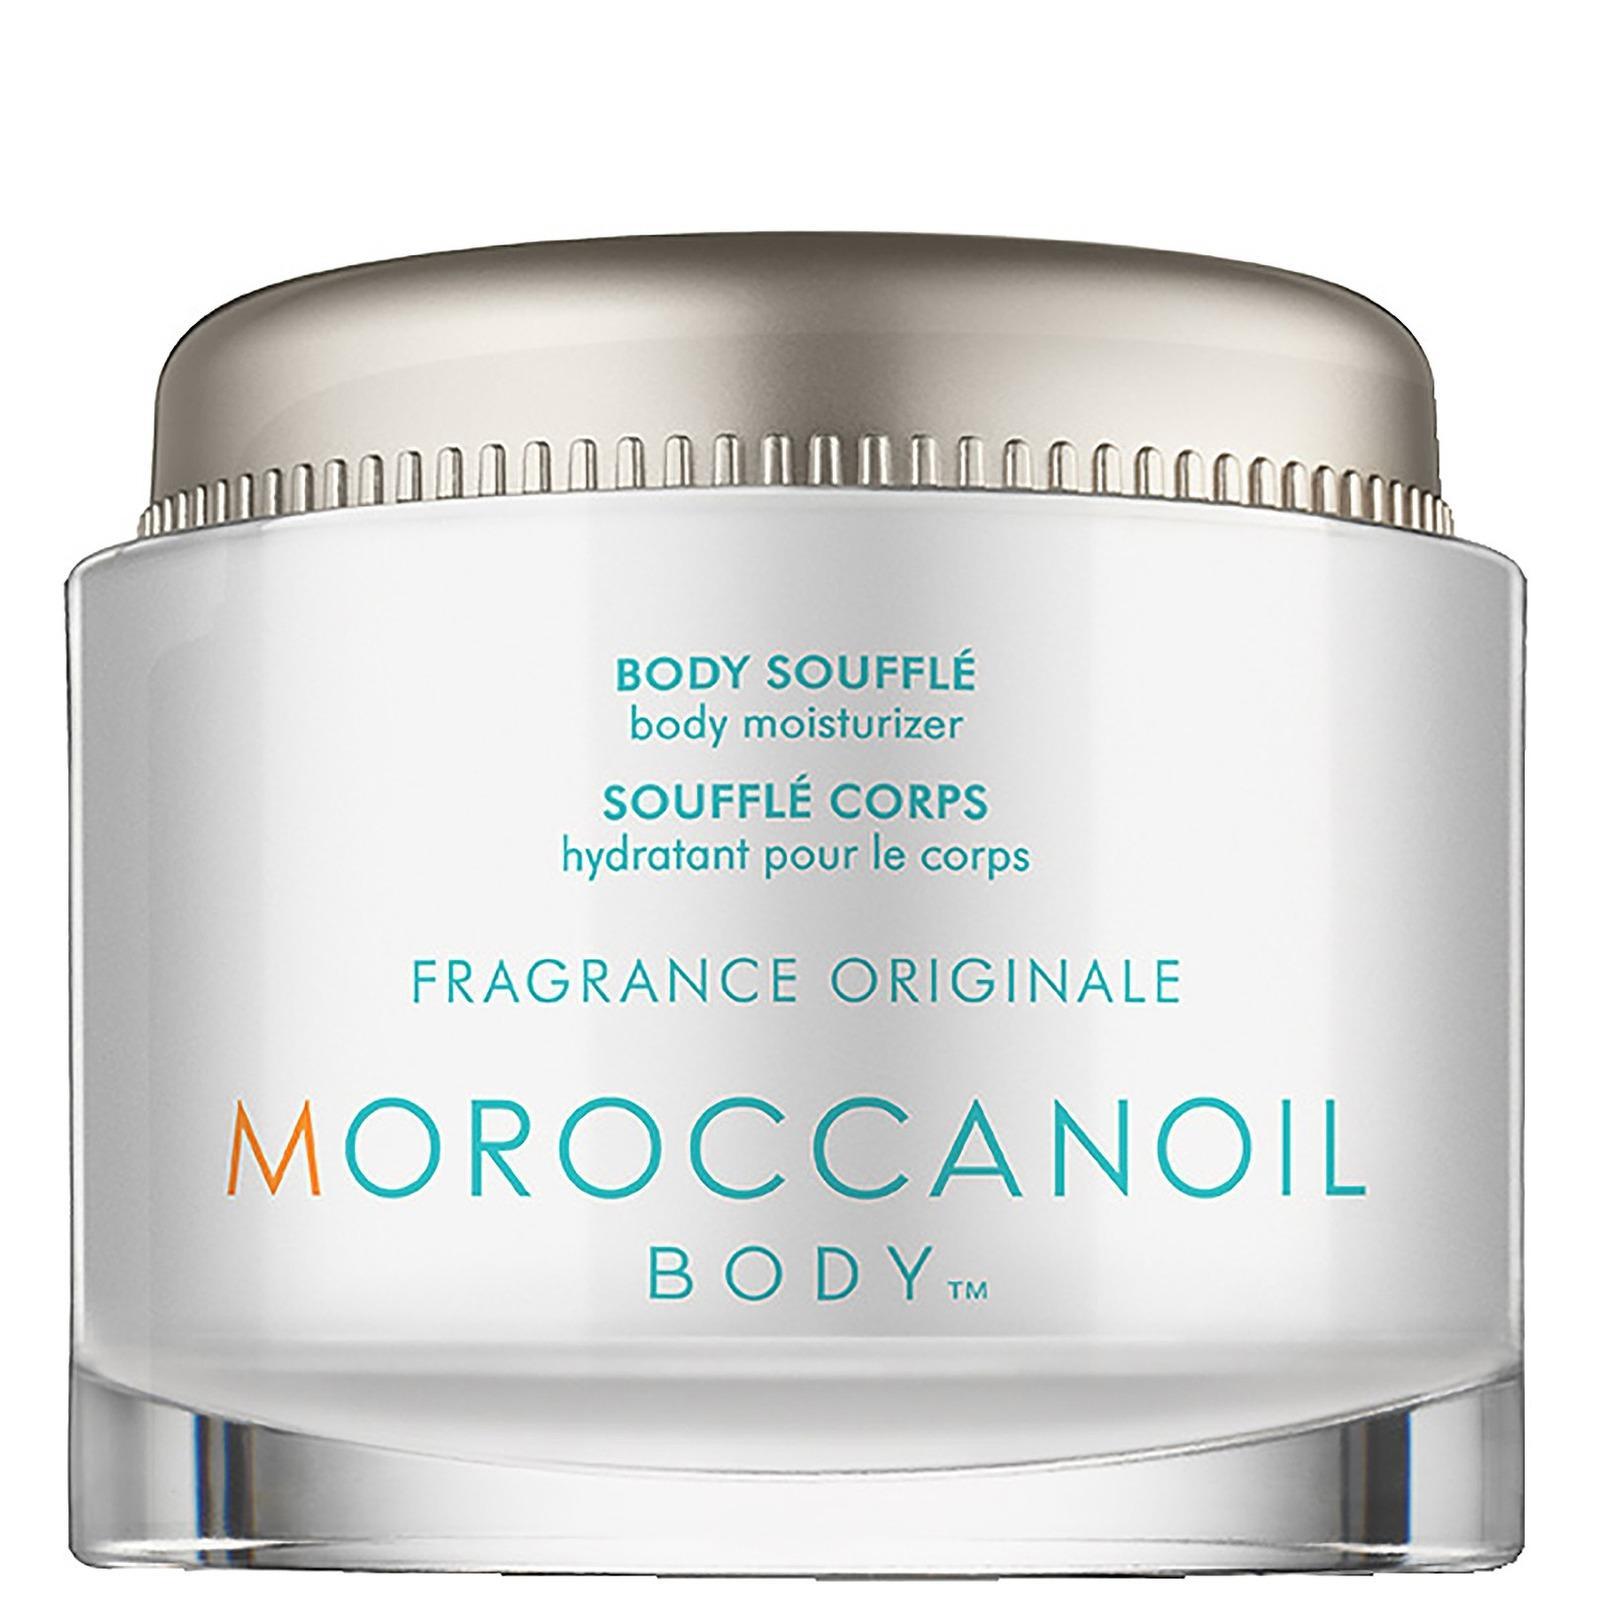 Moroccanoil Body Souffle Fragrance Originale Хидратиращо суфле за тяло без опаковка